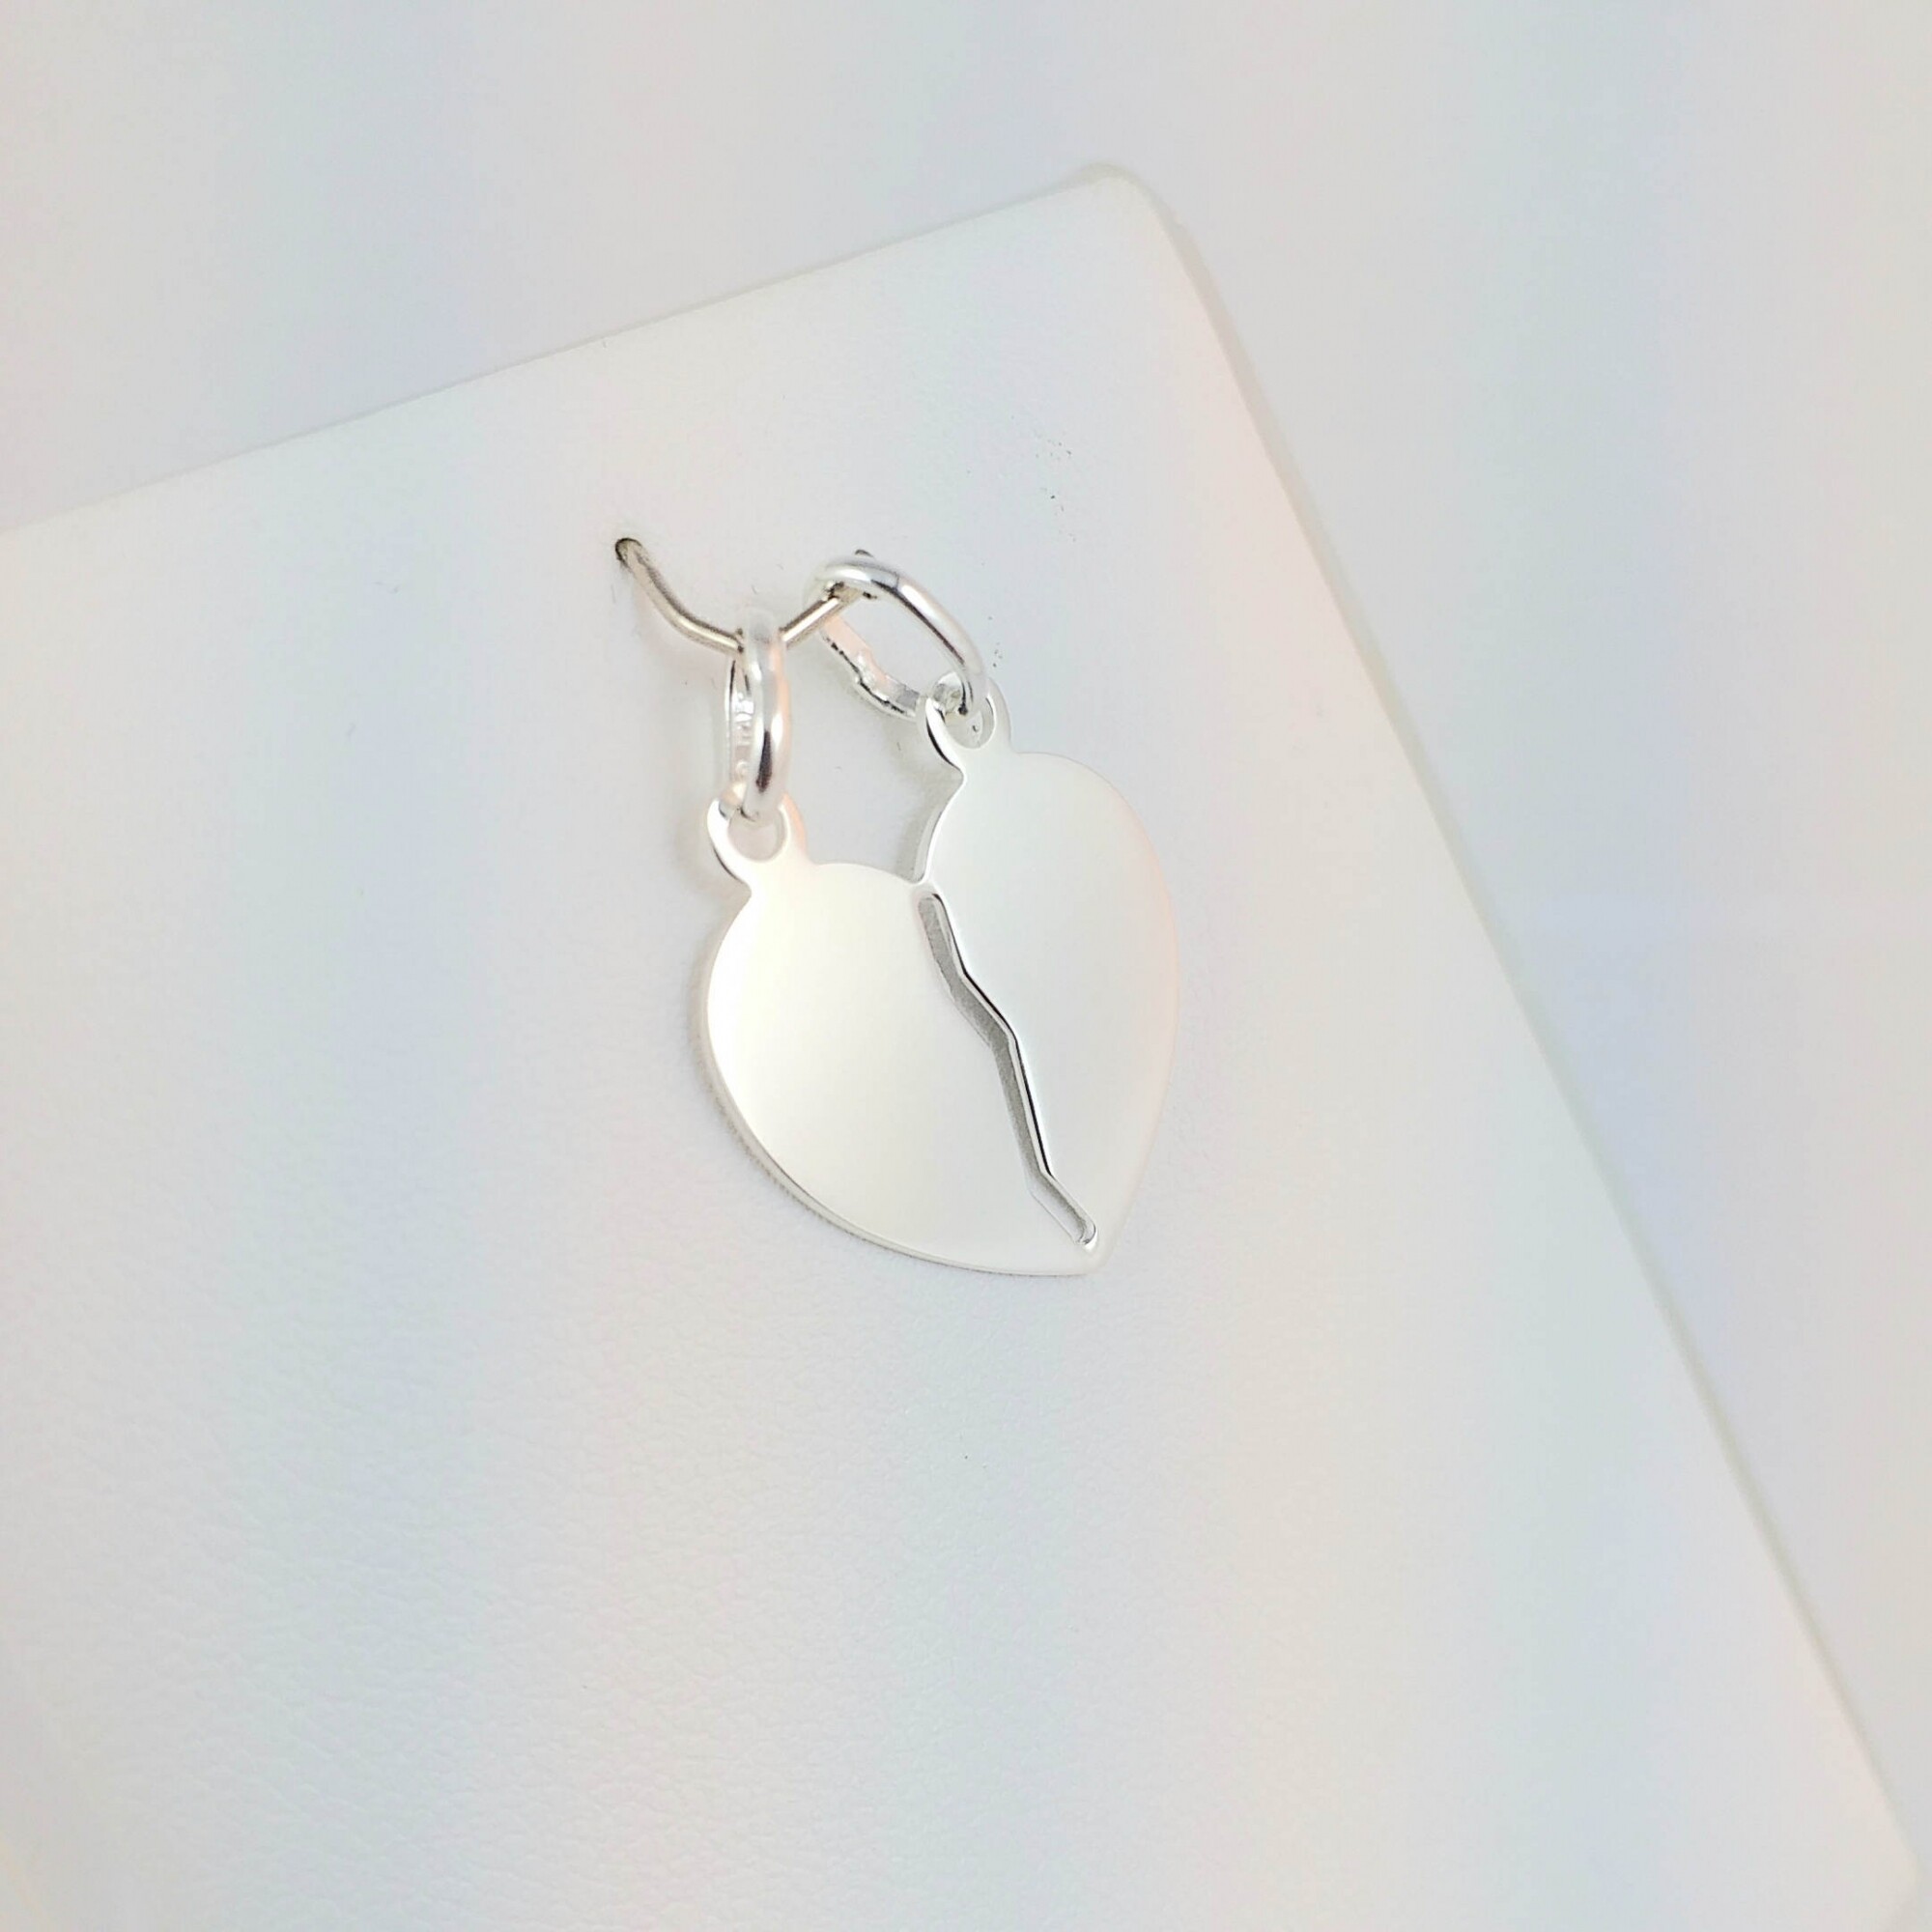 Dije de plata 925 modelo Mitad del Corazón 20mm, ideal para parejas y amigos.  — Veroca Joyas